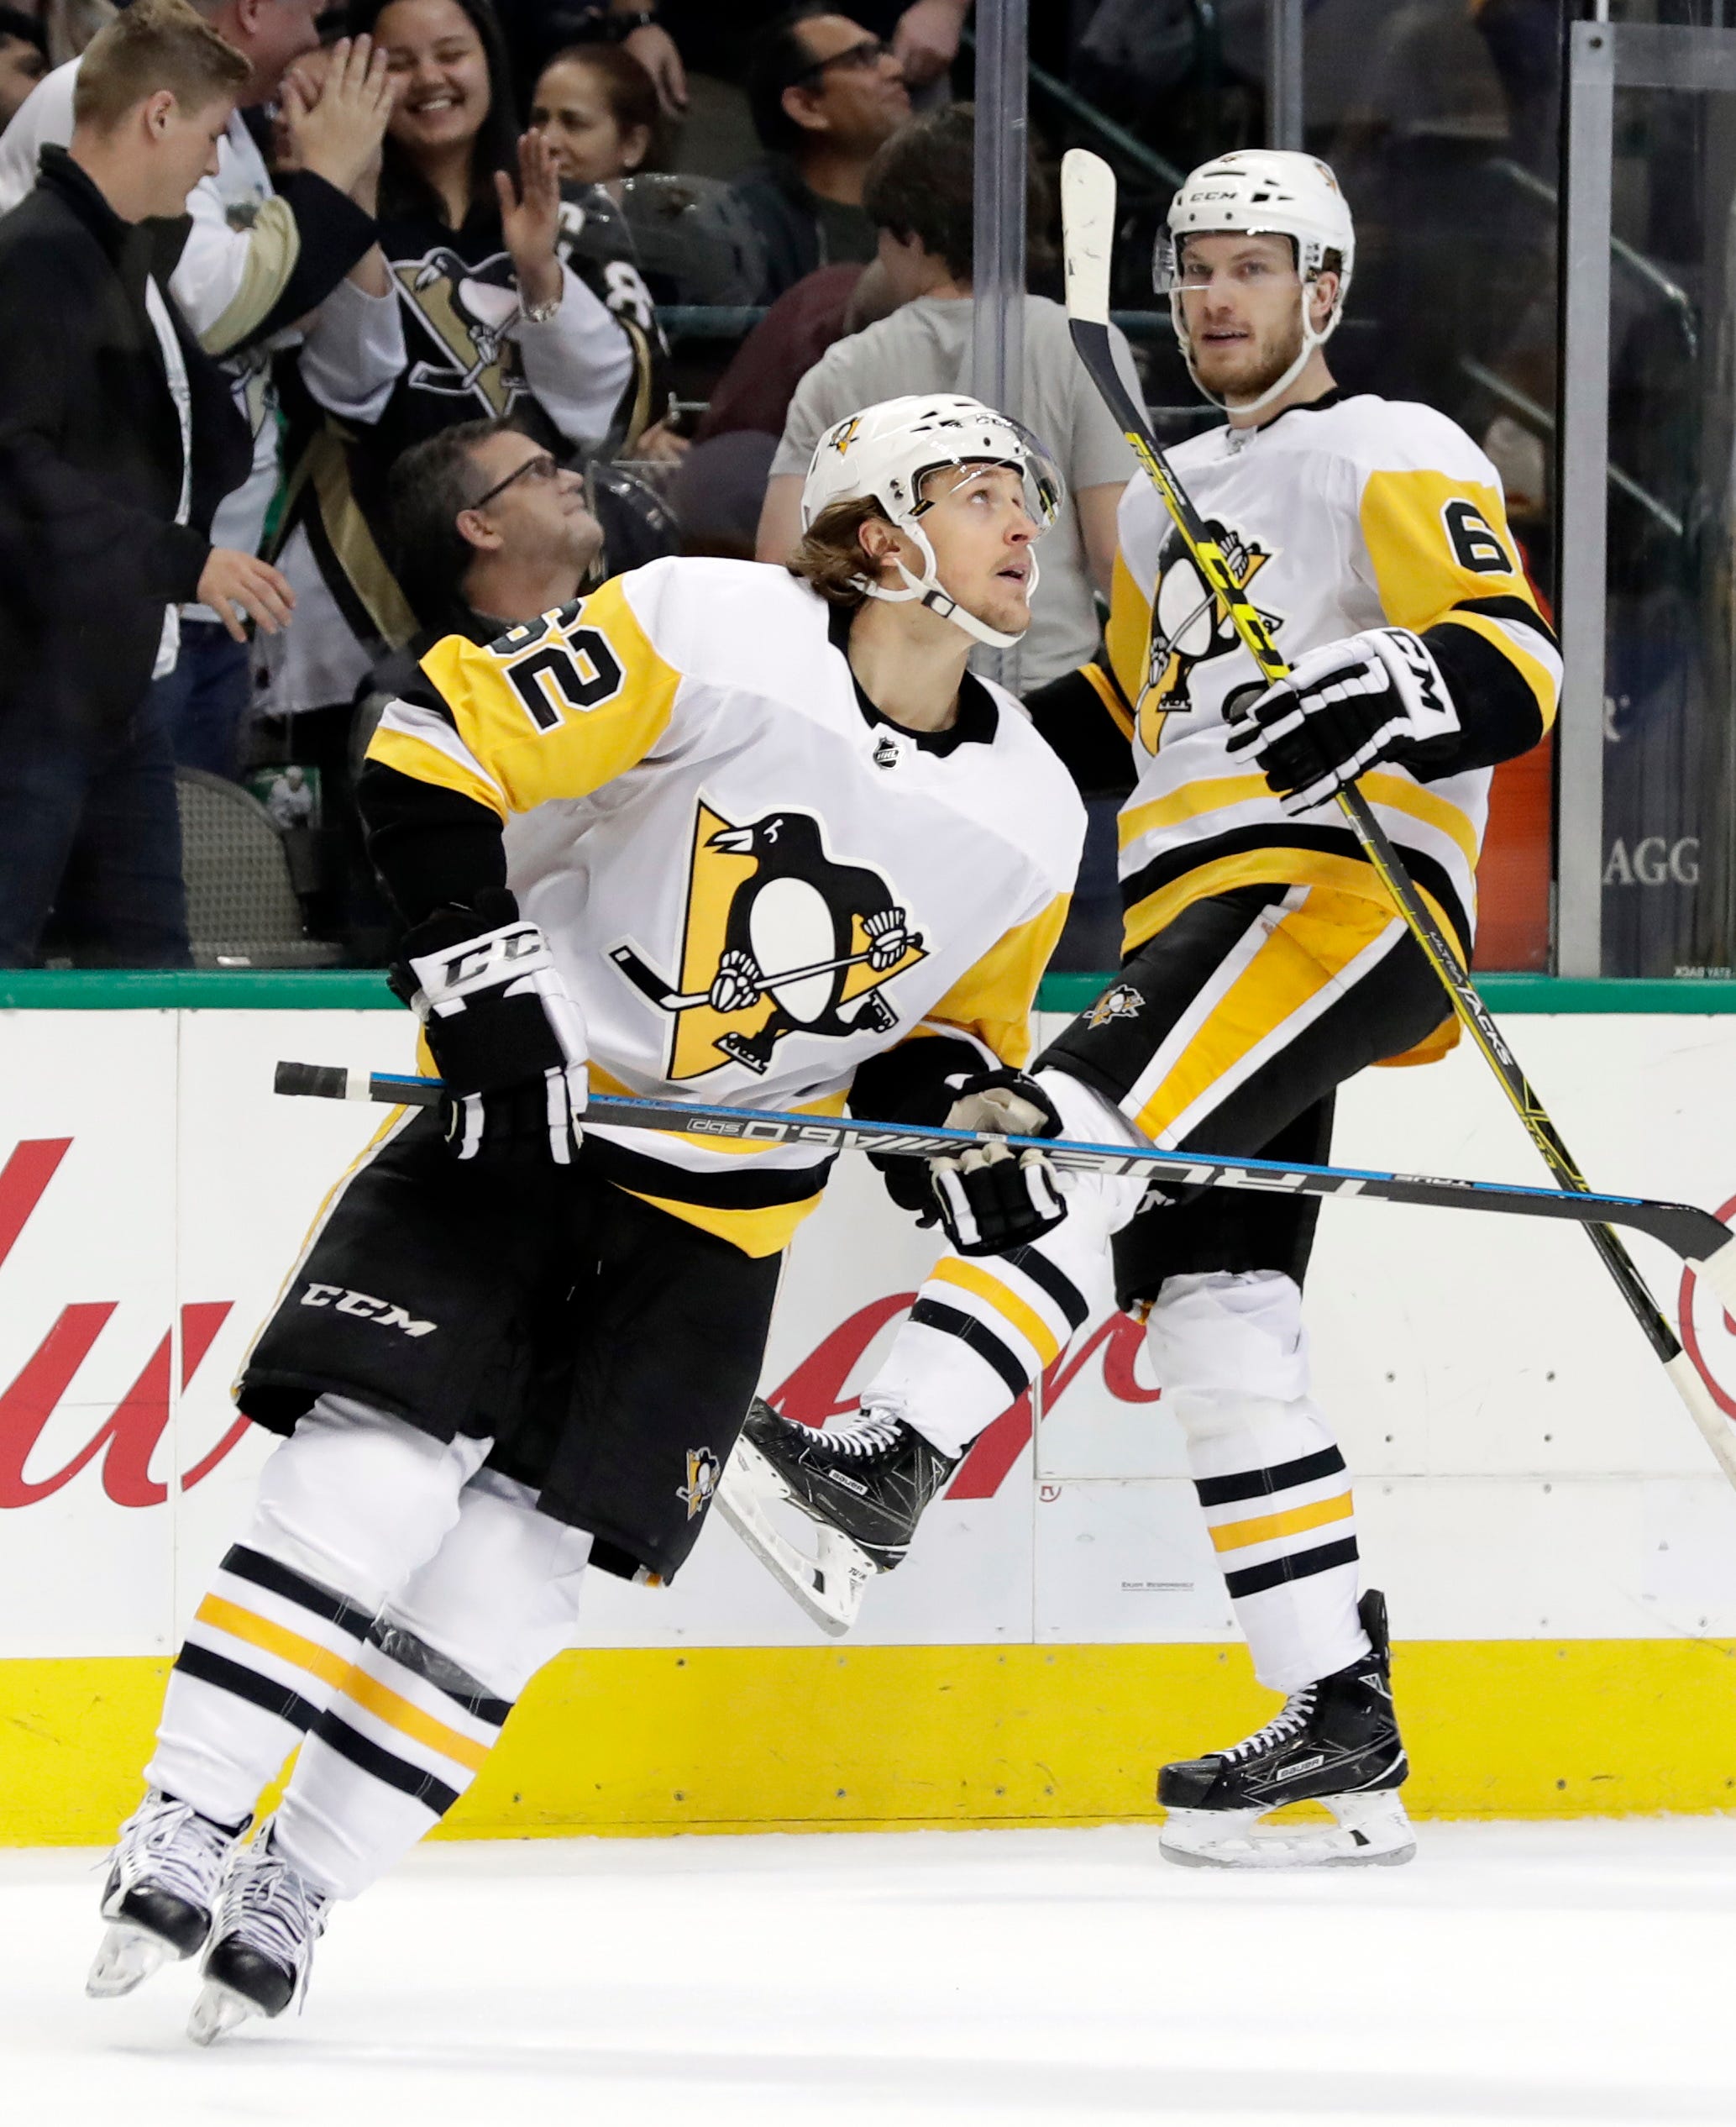 Lehtonen, Seguin lead Stars over Penguins 4-3 in shootout